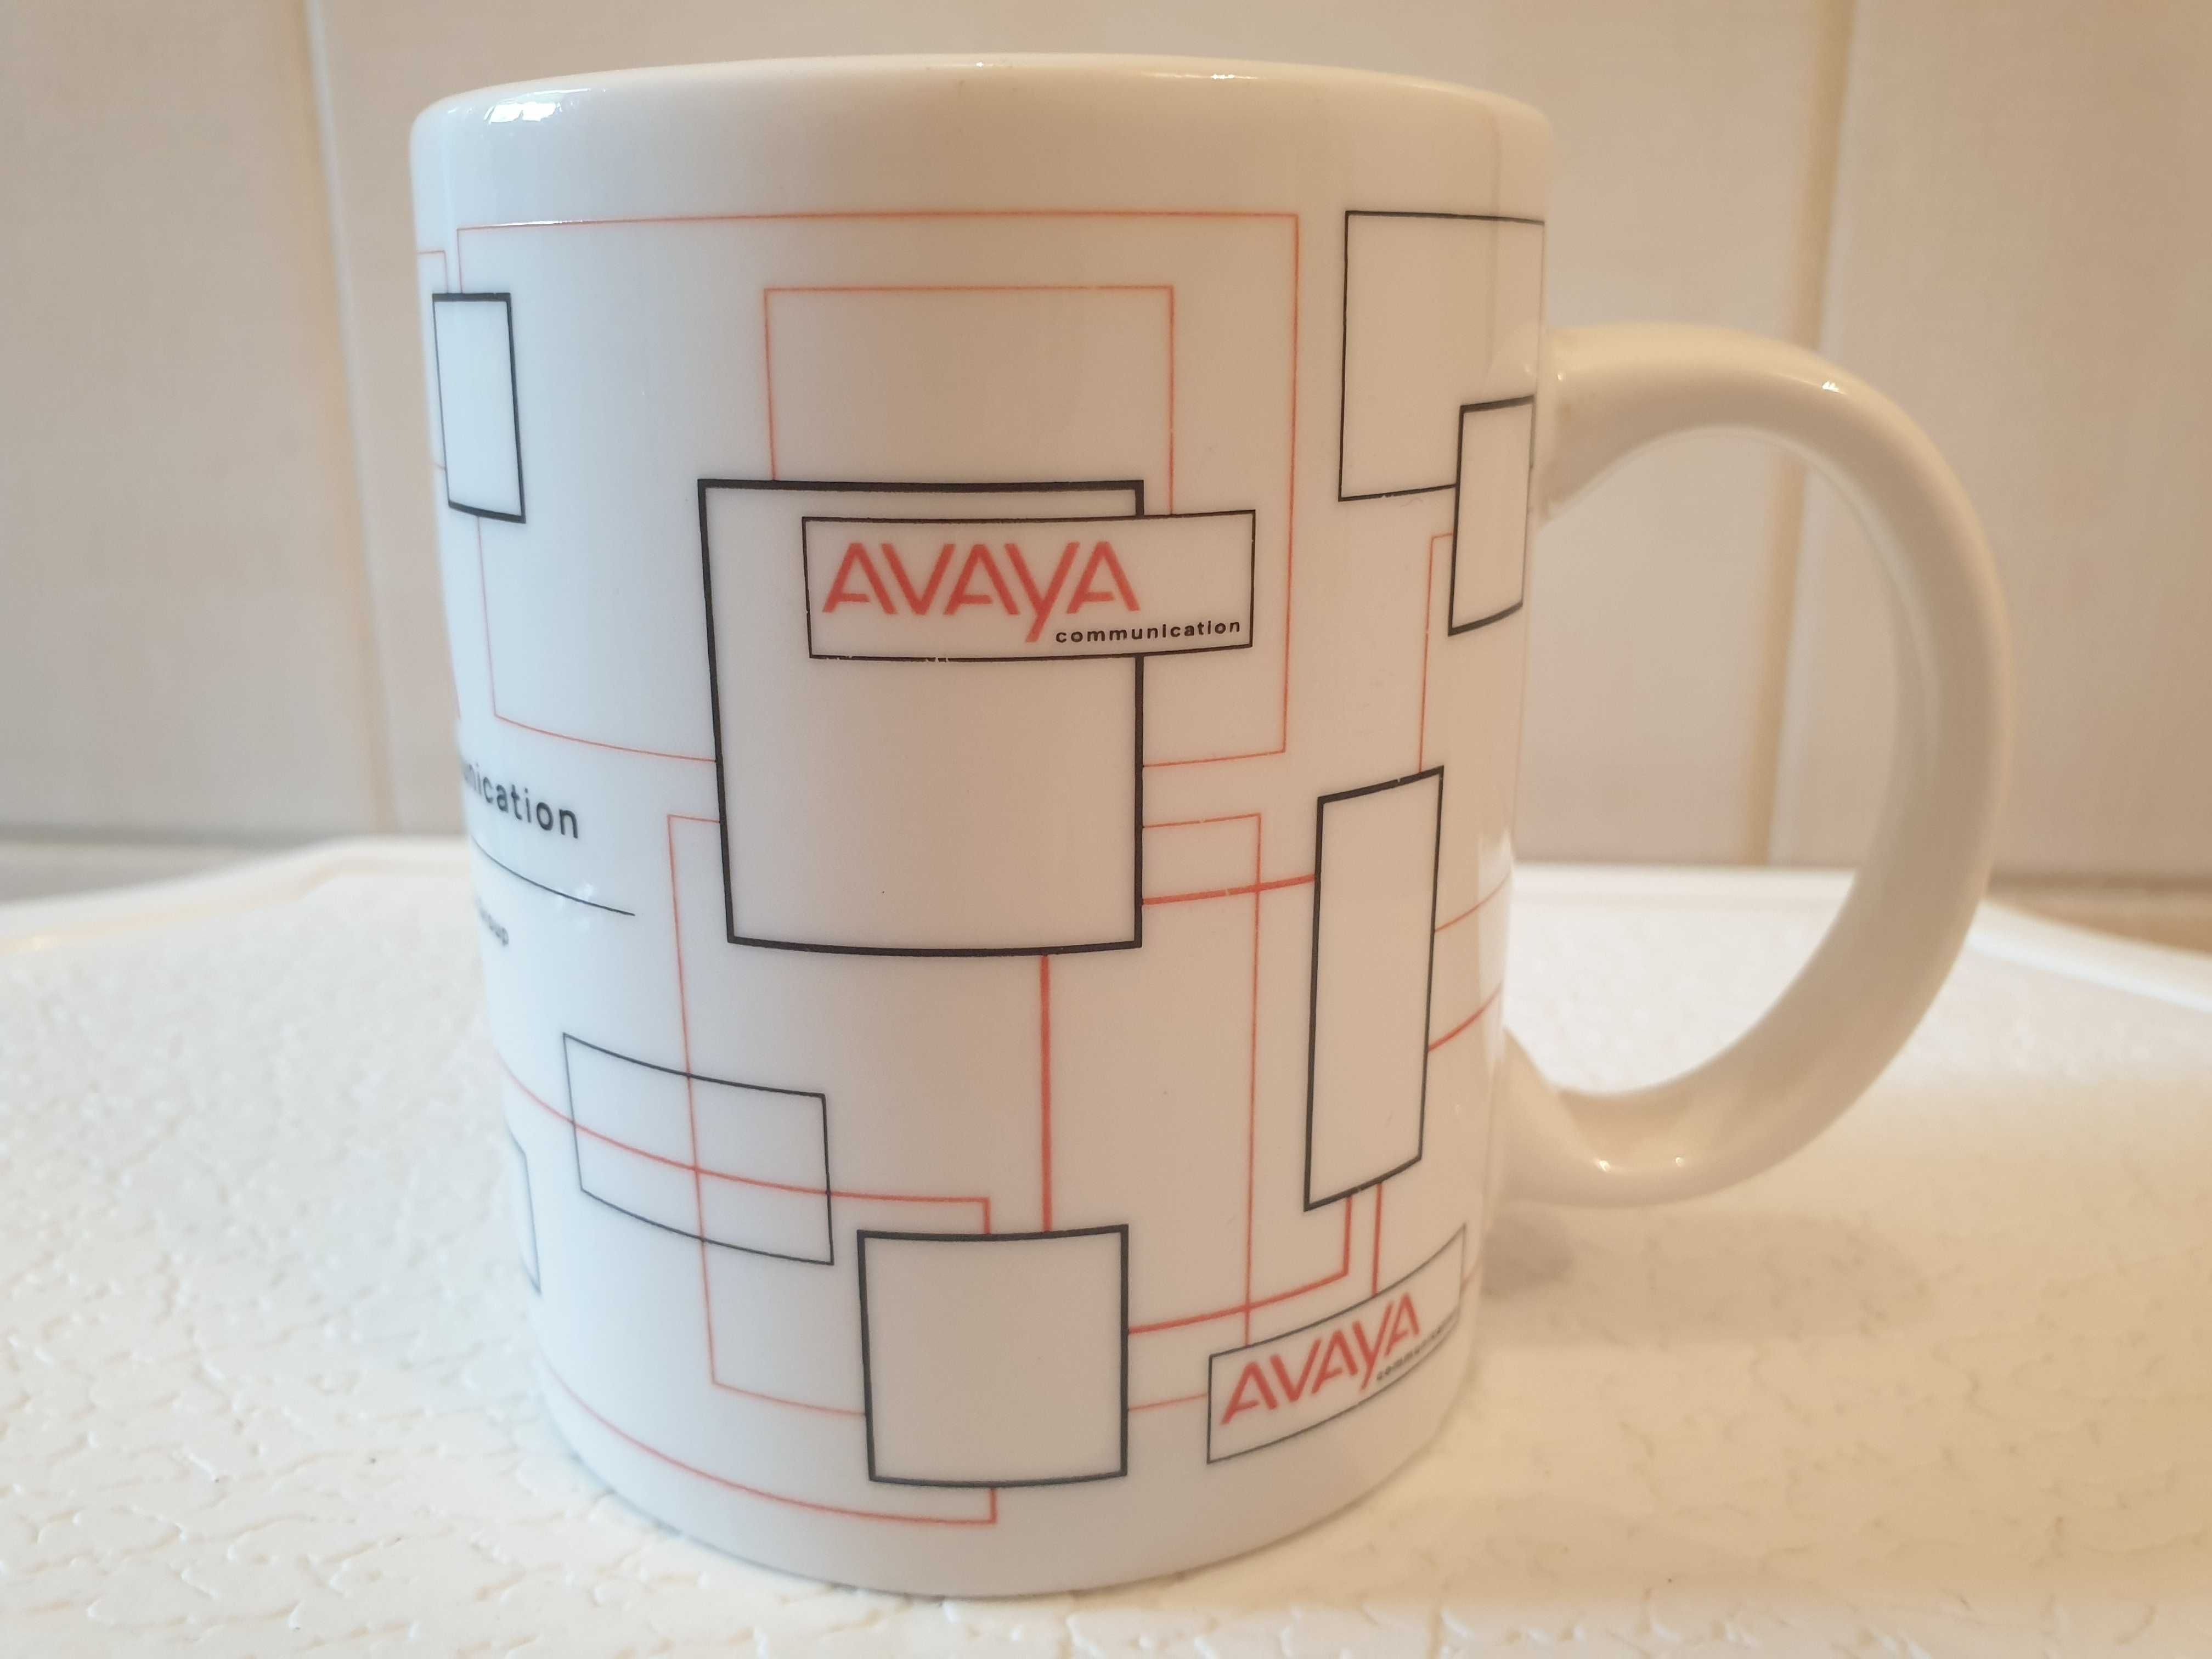 Kubek Avaya Communication ceramiczny